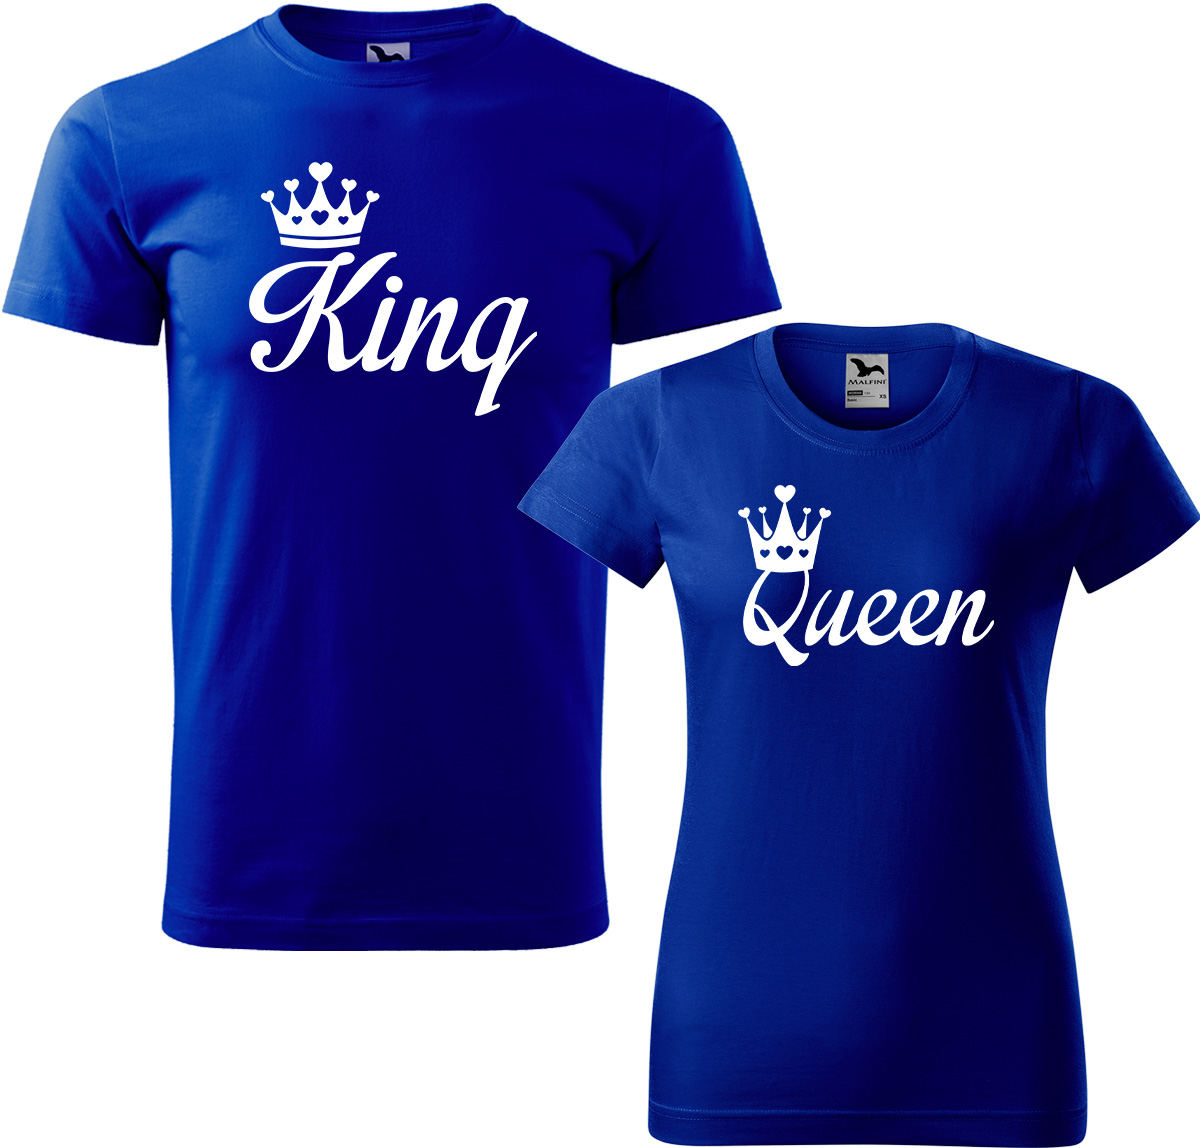 Trička pro páry - King a queen Barva: Královská modrá (05), Velikost dámské tričko: S, Velikost pánské tričko: S